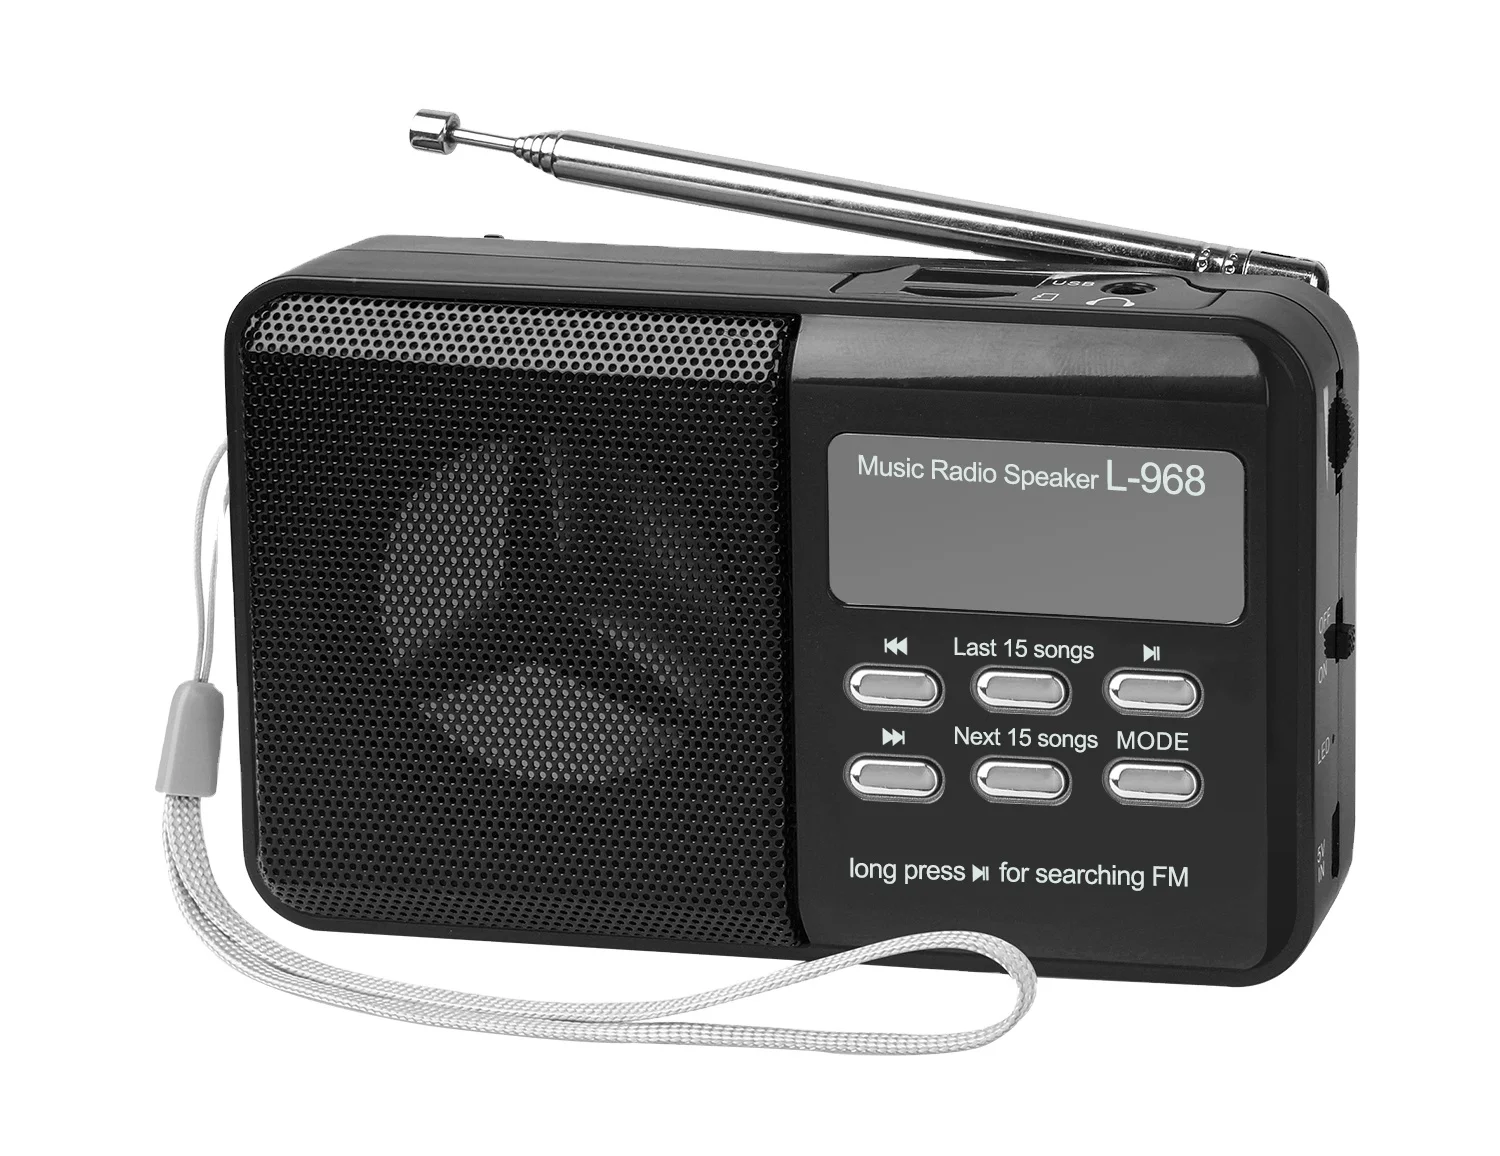 portable mini fm auto scan radio L-968 support usb flash drive and sd card